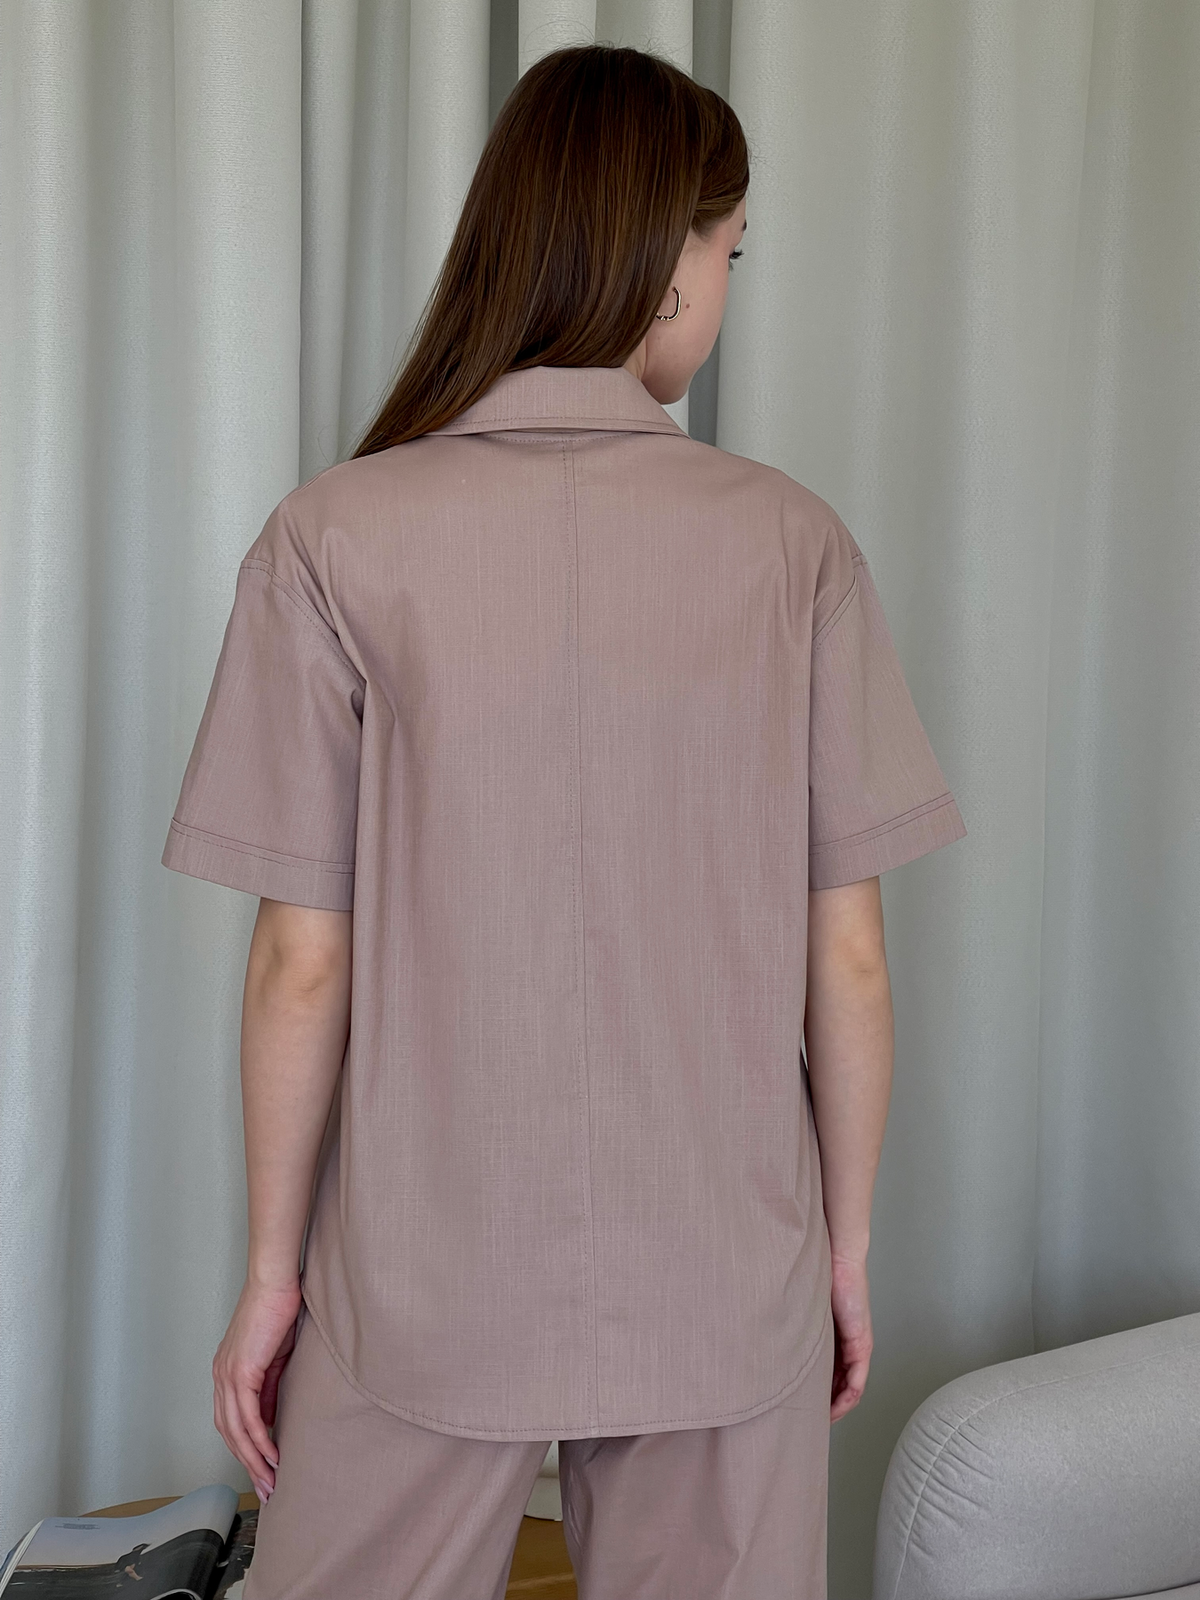 Купить Льняная рубашка с коротким рукавом бежевая Merlini Нино 200001204 размер 42-44 (S-M) в интернет-магазине